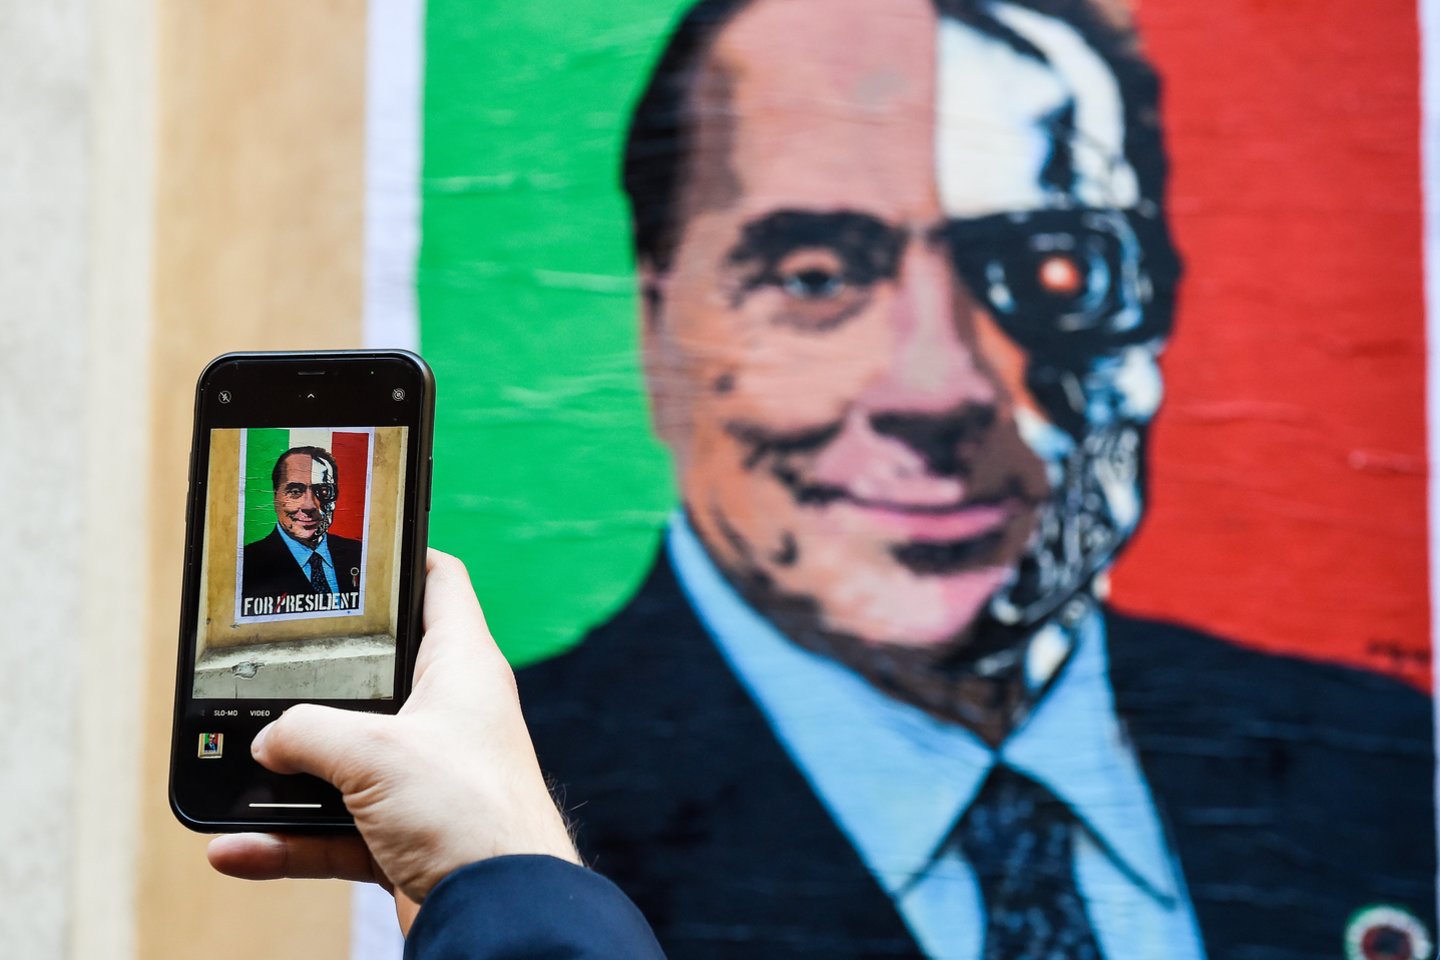 Buvęs premjeras milijardierius Silvio Berlusconi šeštadienį, likus dviem dienoms iki balsavimo pradžios, pasitraukė iš kovos dėl Italijos prezidento posto.<br>ZUMA Press/Scanpix nuotr.